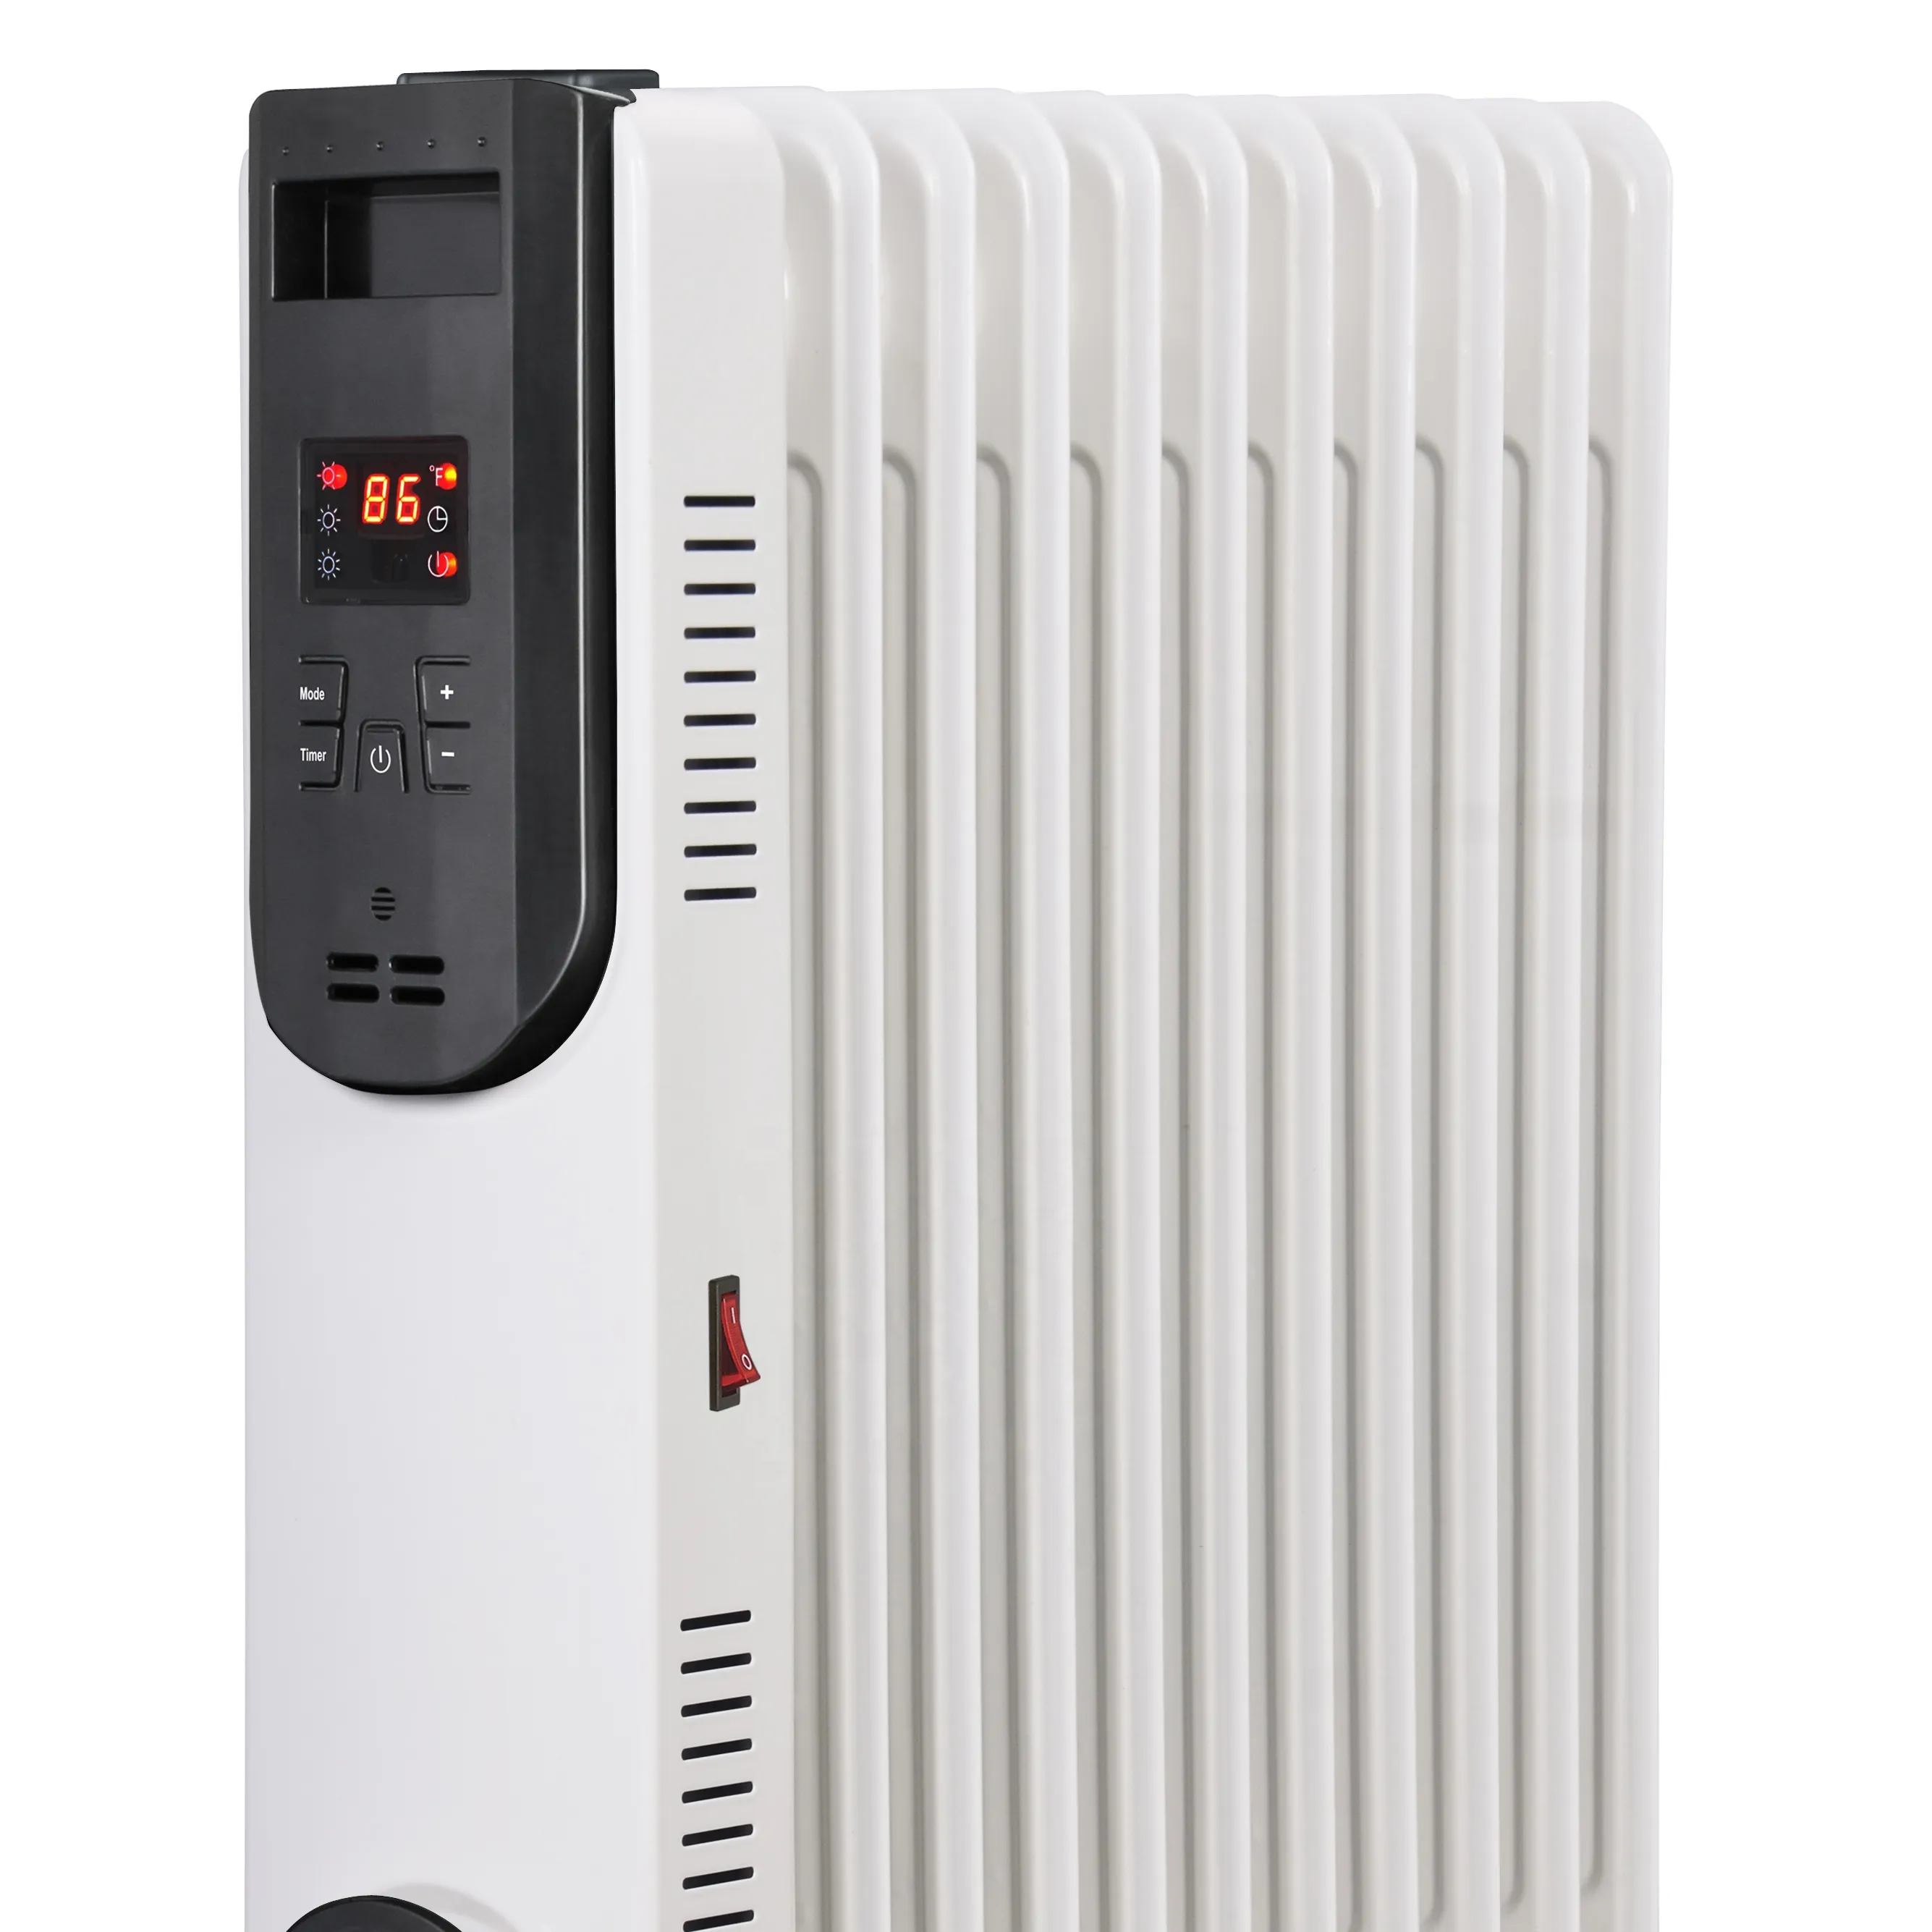 Riscaldatore del radiatore riempito di olio con riscaldatore di spazio portatile elettrico telecomandato con termostato regolabile e 12 ore